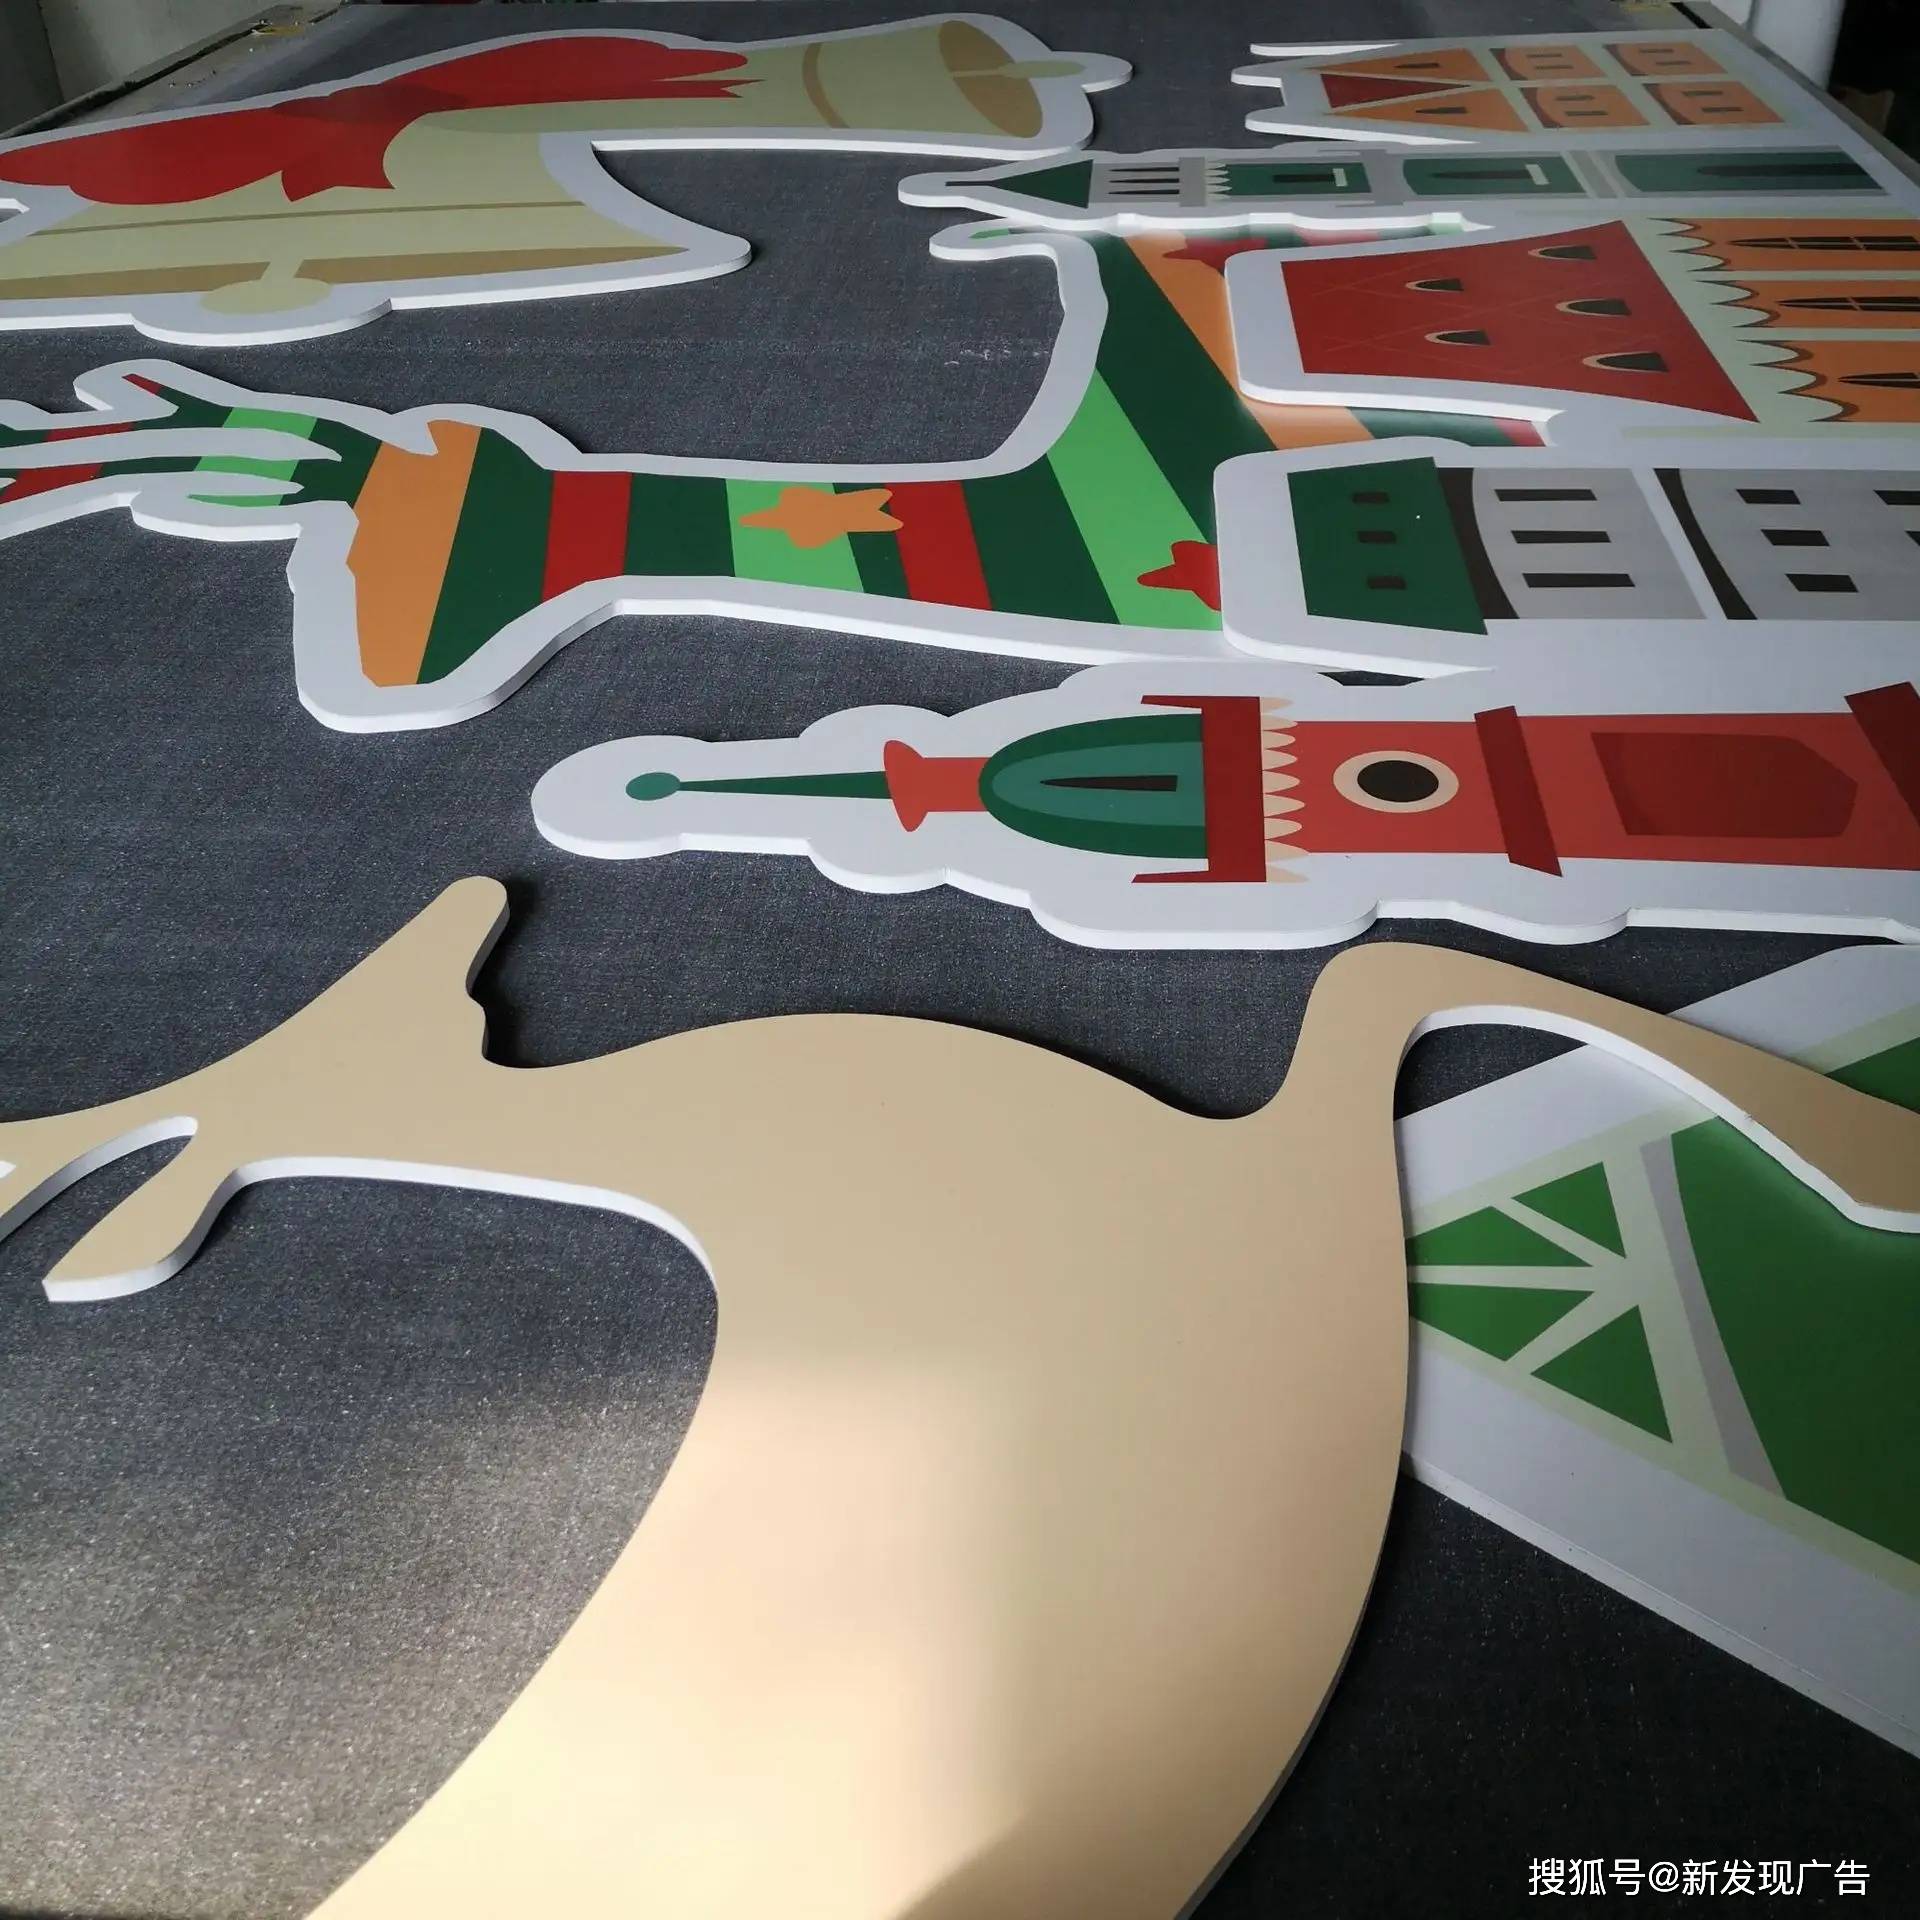 深圳平板uv彩印工厂 加工喷绘亚克力木板铝板雪弗板广告